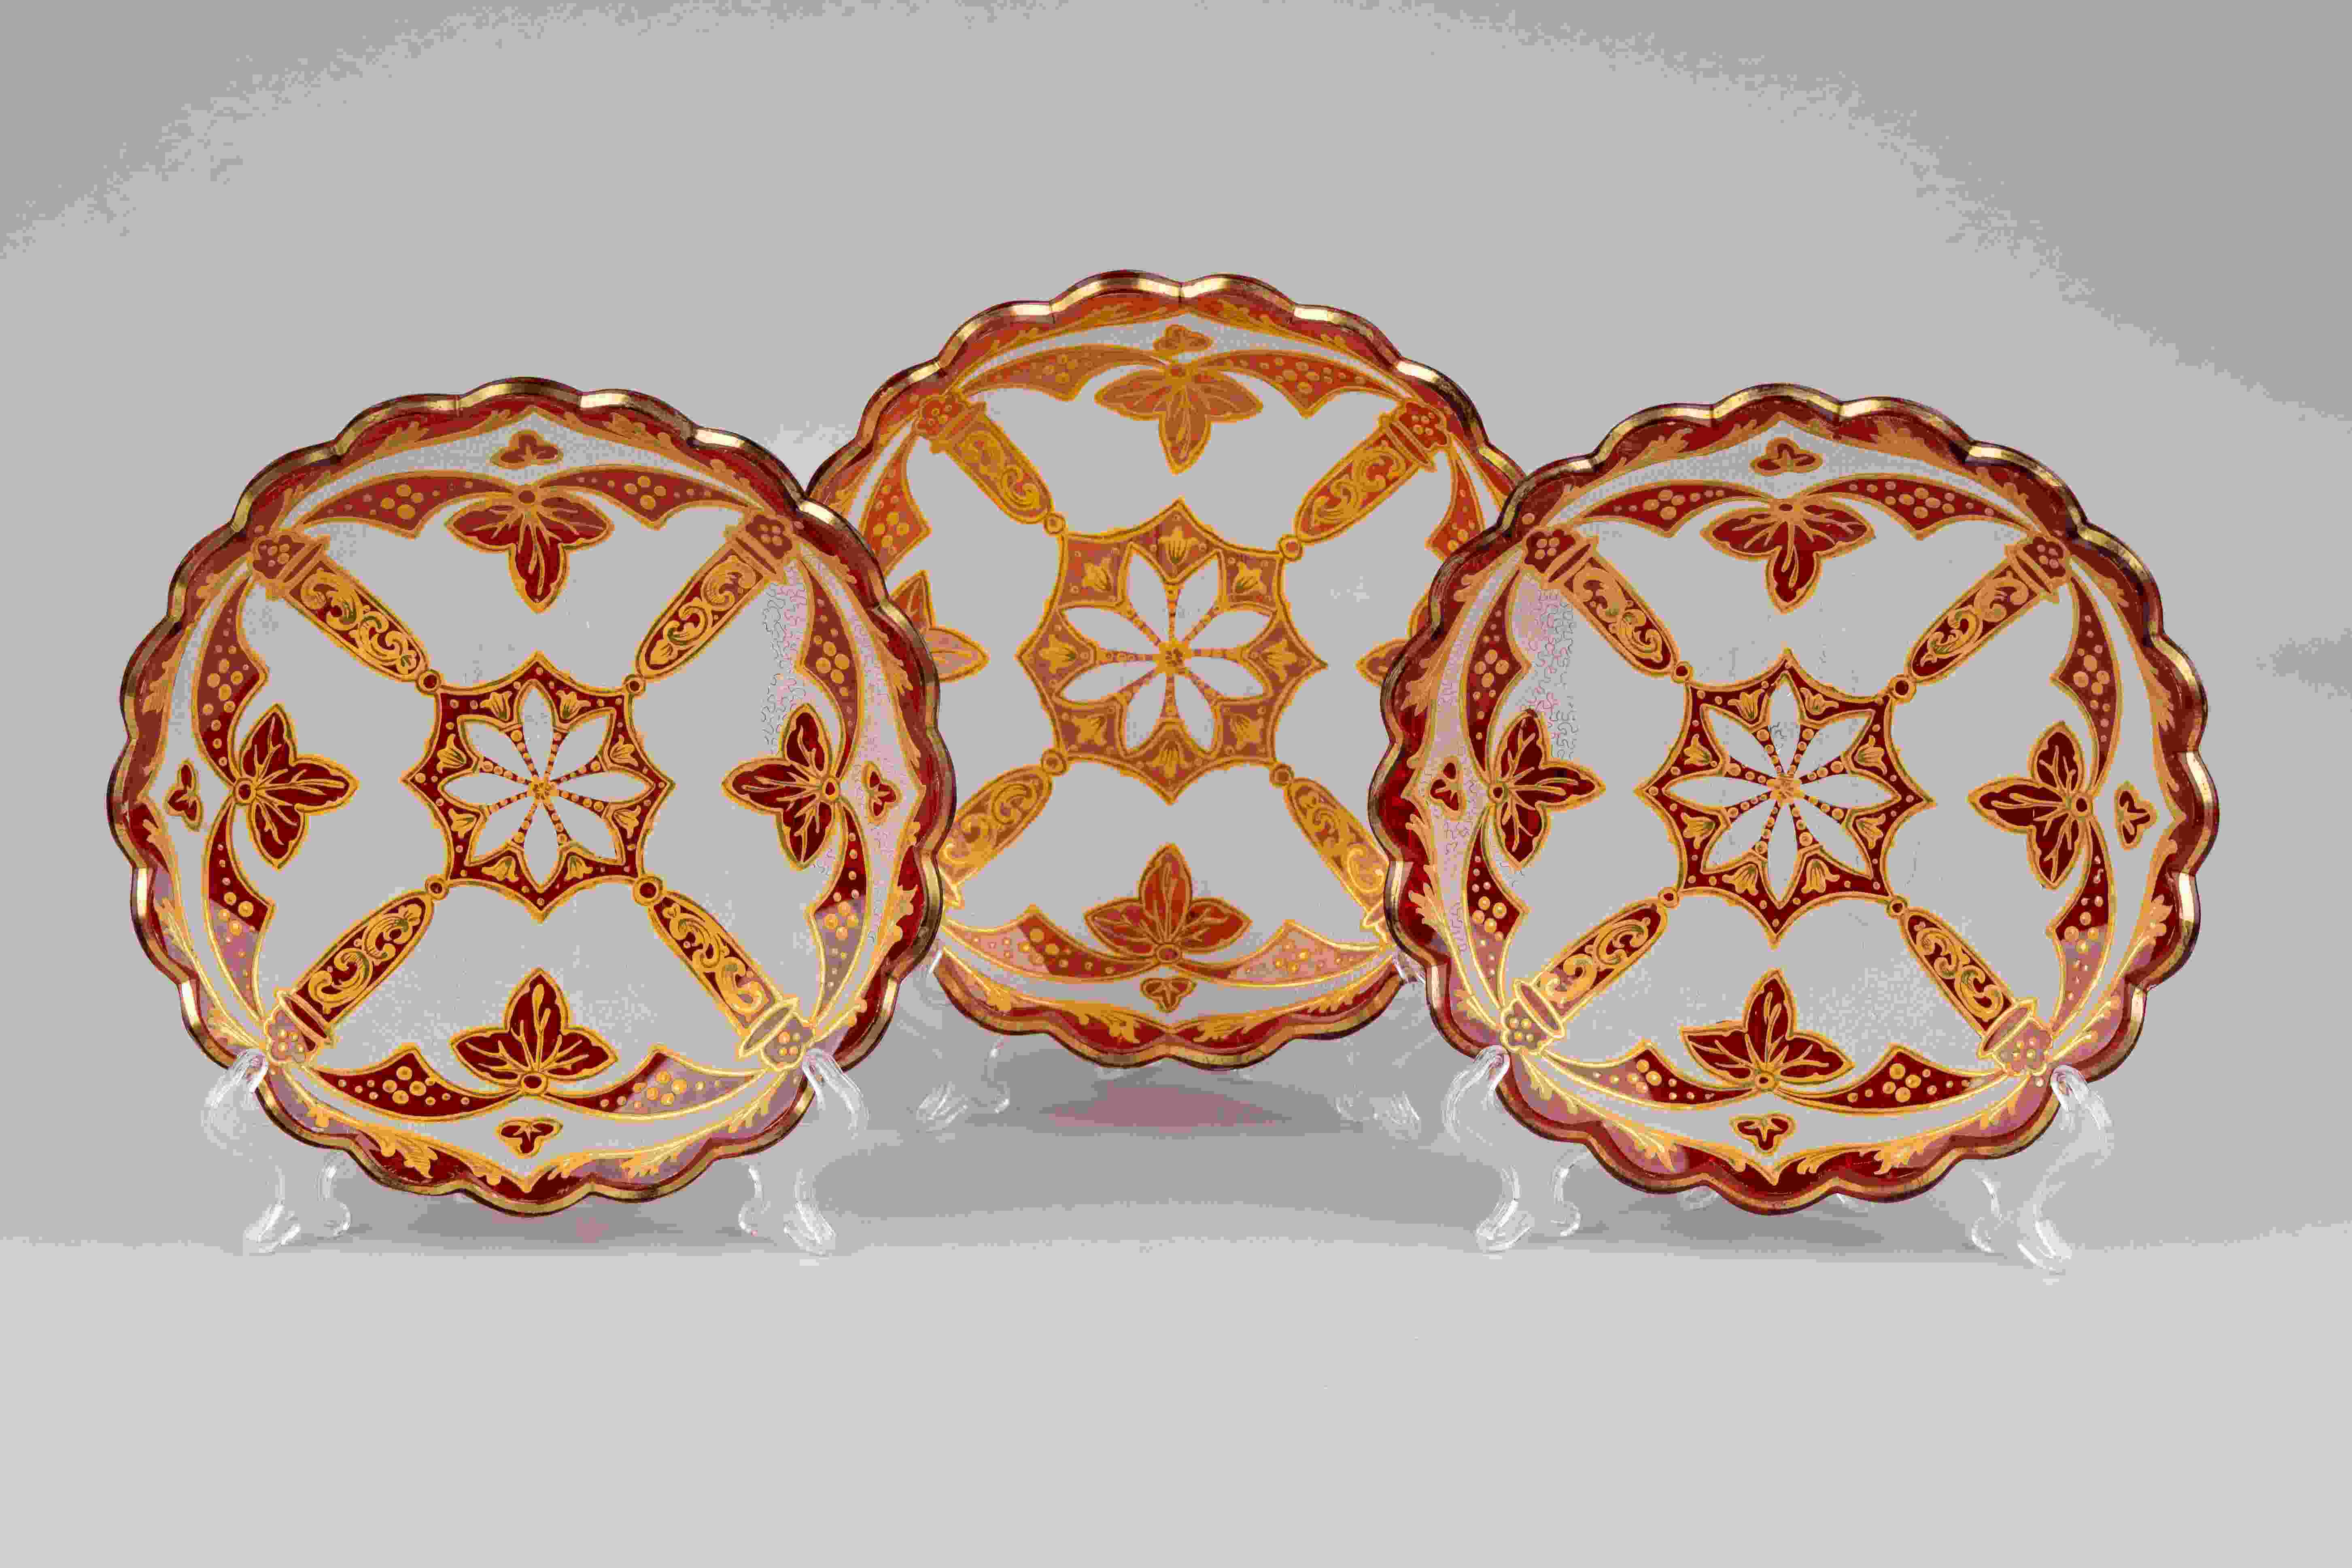 Три тарелки гранатового стекла с росписью золотом.<br>Россия, завод Бахметевых, 1830-40-е годы.